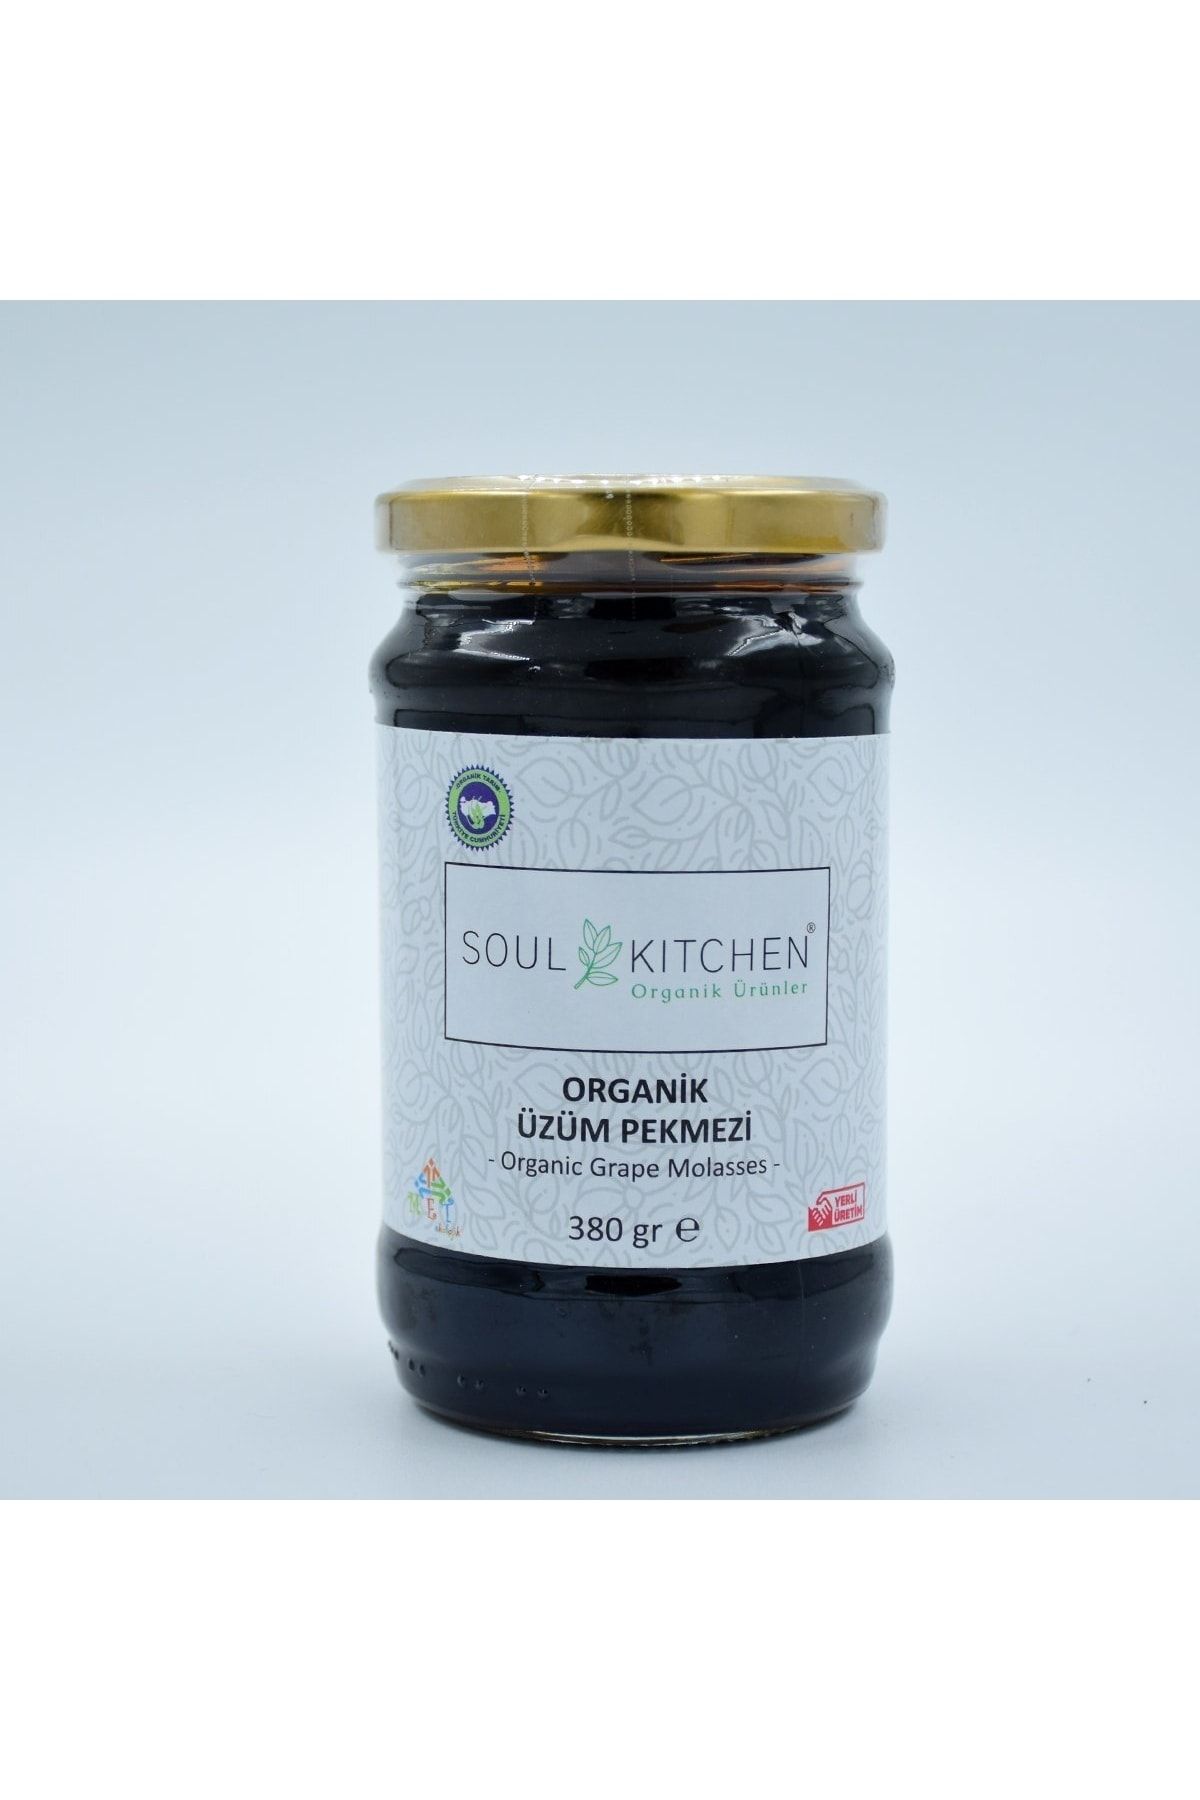 Soul Kitchen Organik Ürünler Organik Üzüm Pekmezi 380gr